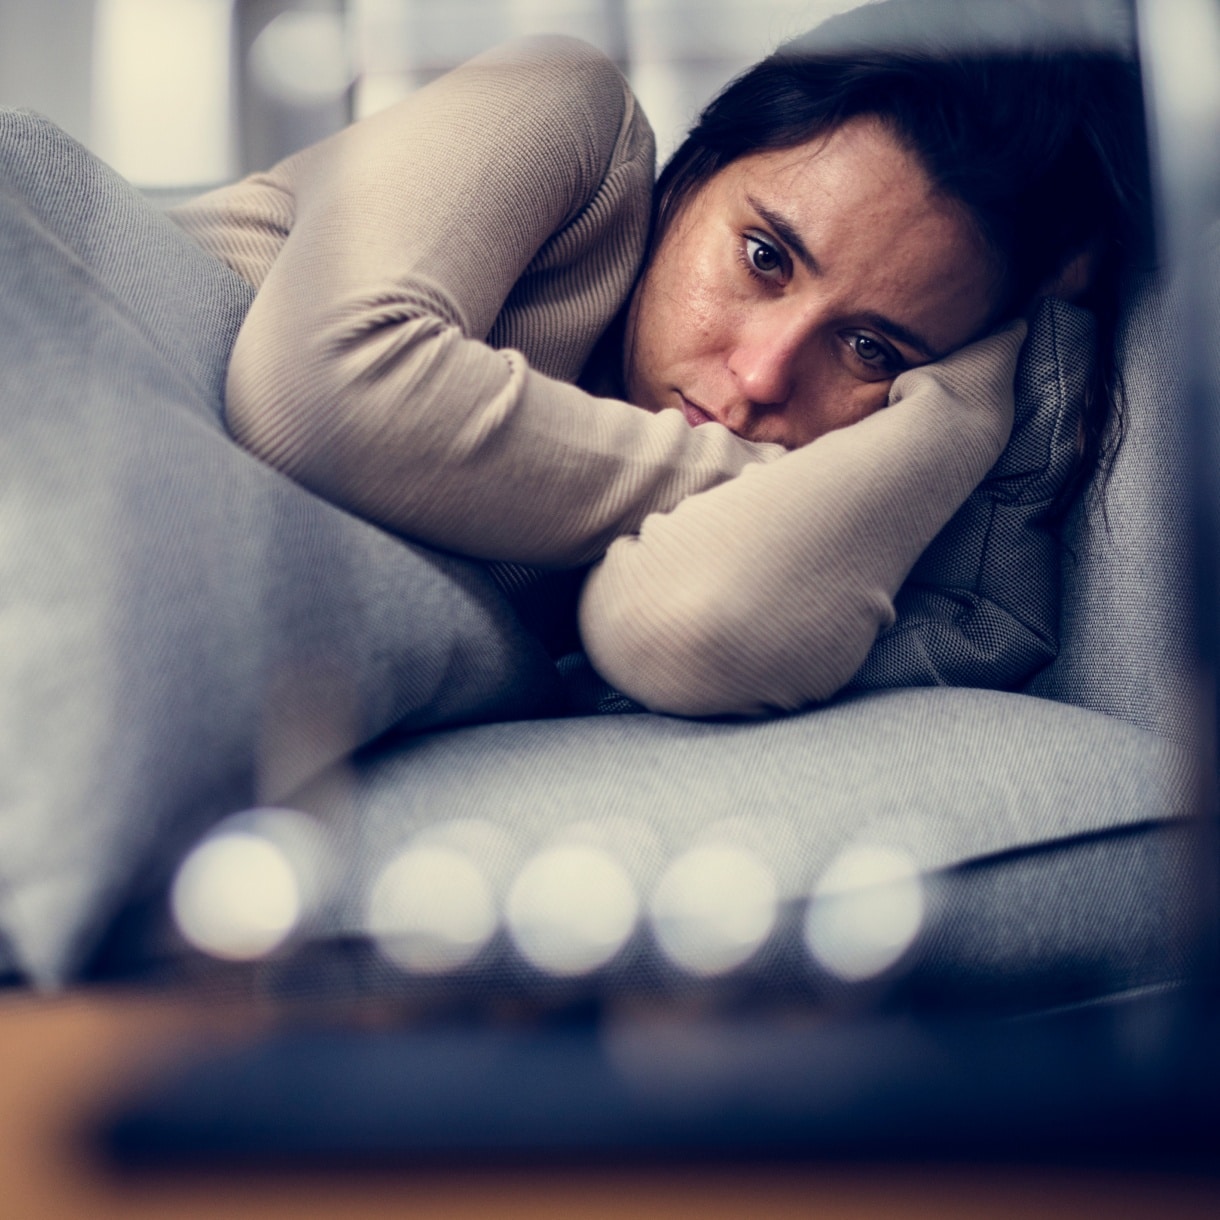 Syndrome dépressif : causes et traitements | syndrome anxio dépressif | Centre MAAP | Paris